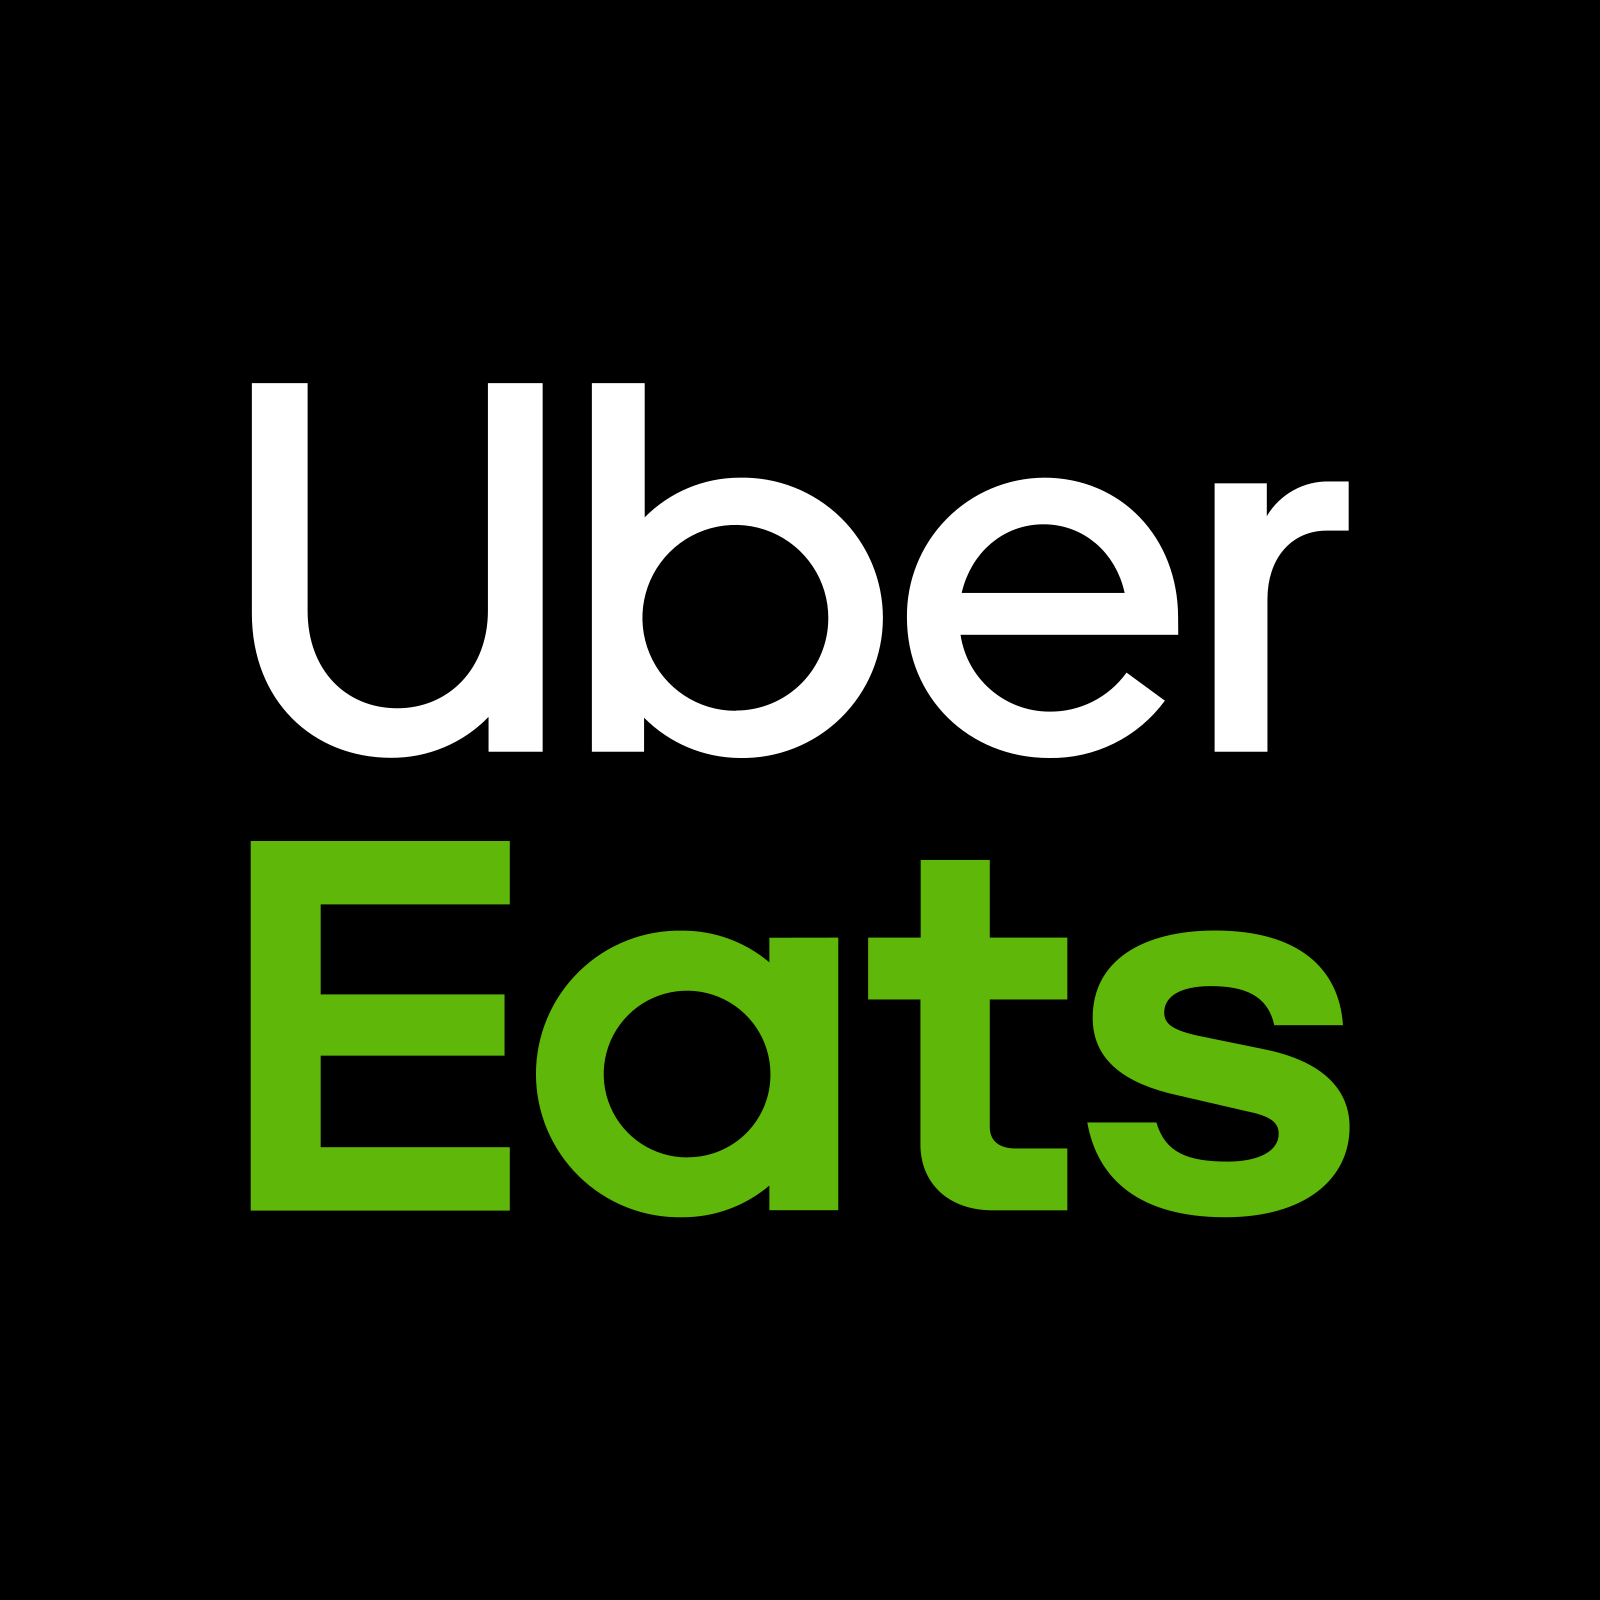 uber eats logo 3 - Uber Eats Logo